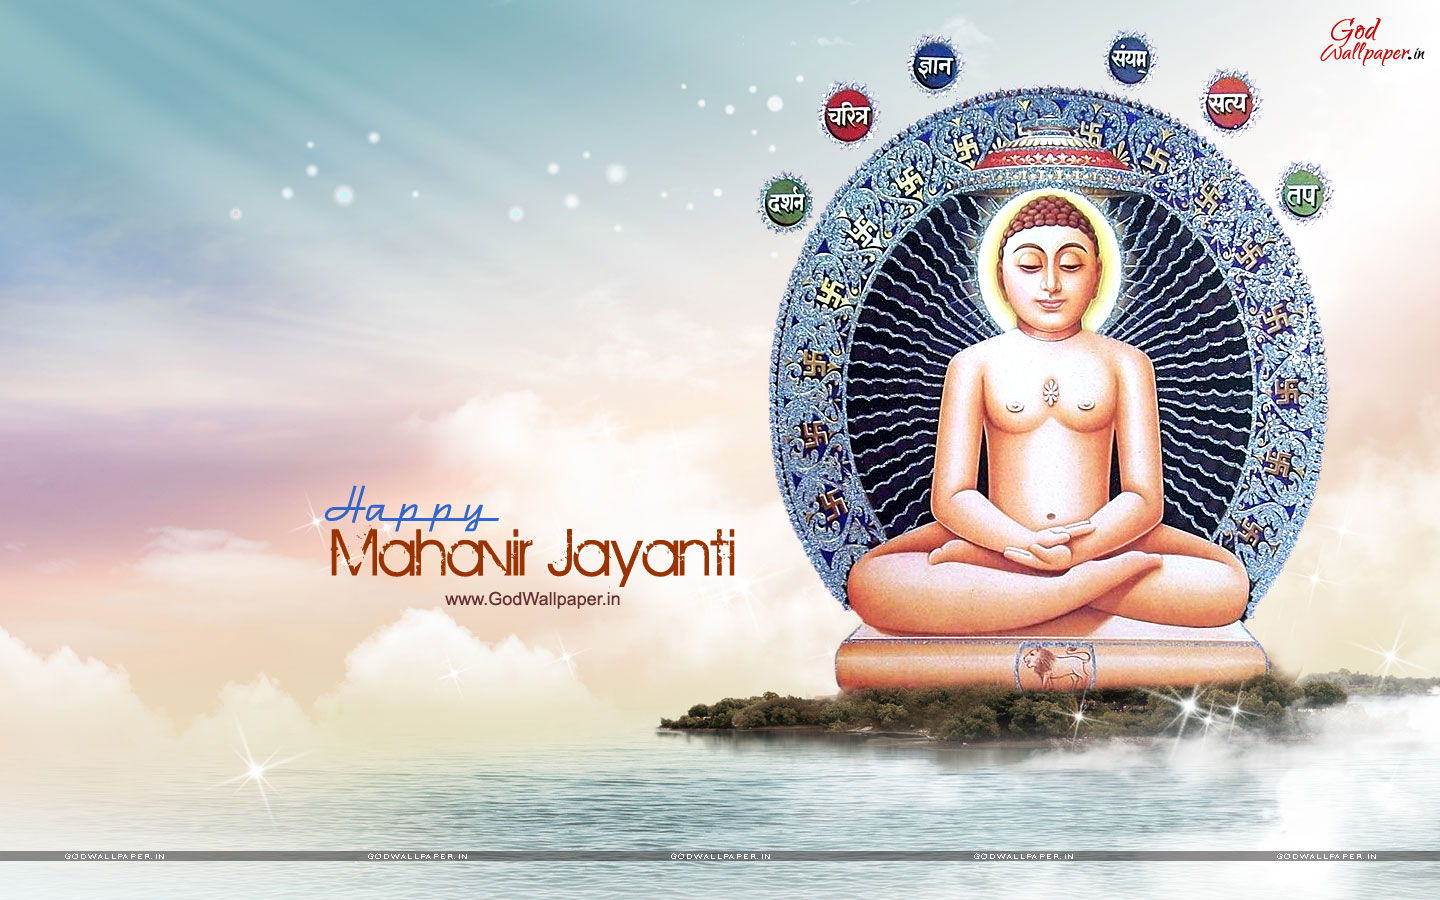 Download Wallpaper - Mahavir Jayanti Image Hd , HD Wallpaper & Backgrounds